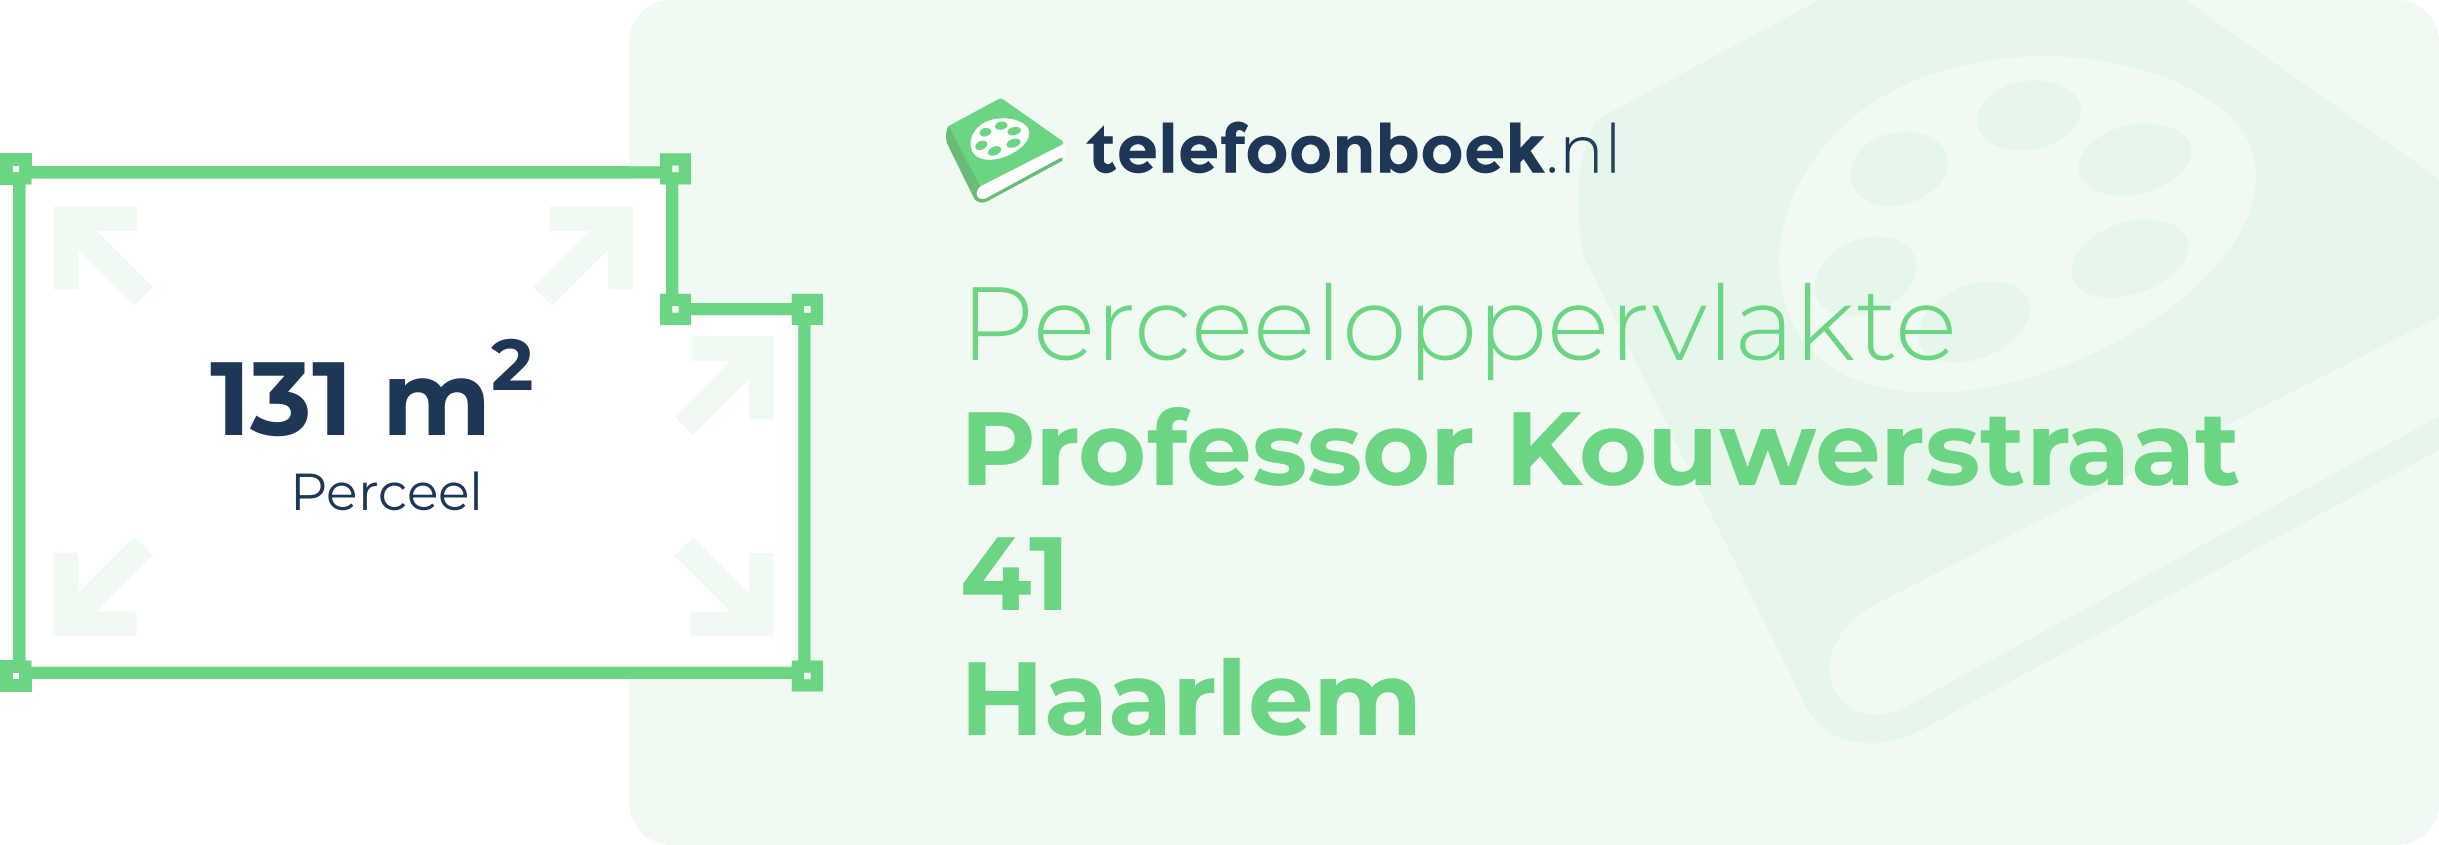 Perceeloppervlakte Professor Kouwerstraat 41 Haarlem